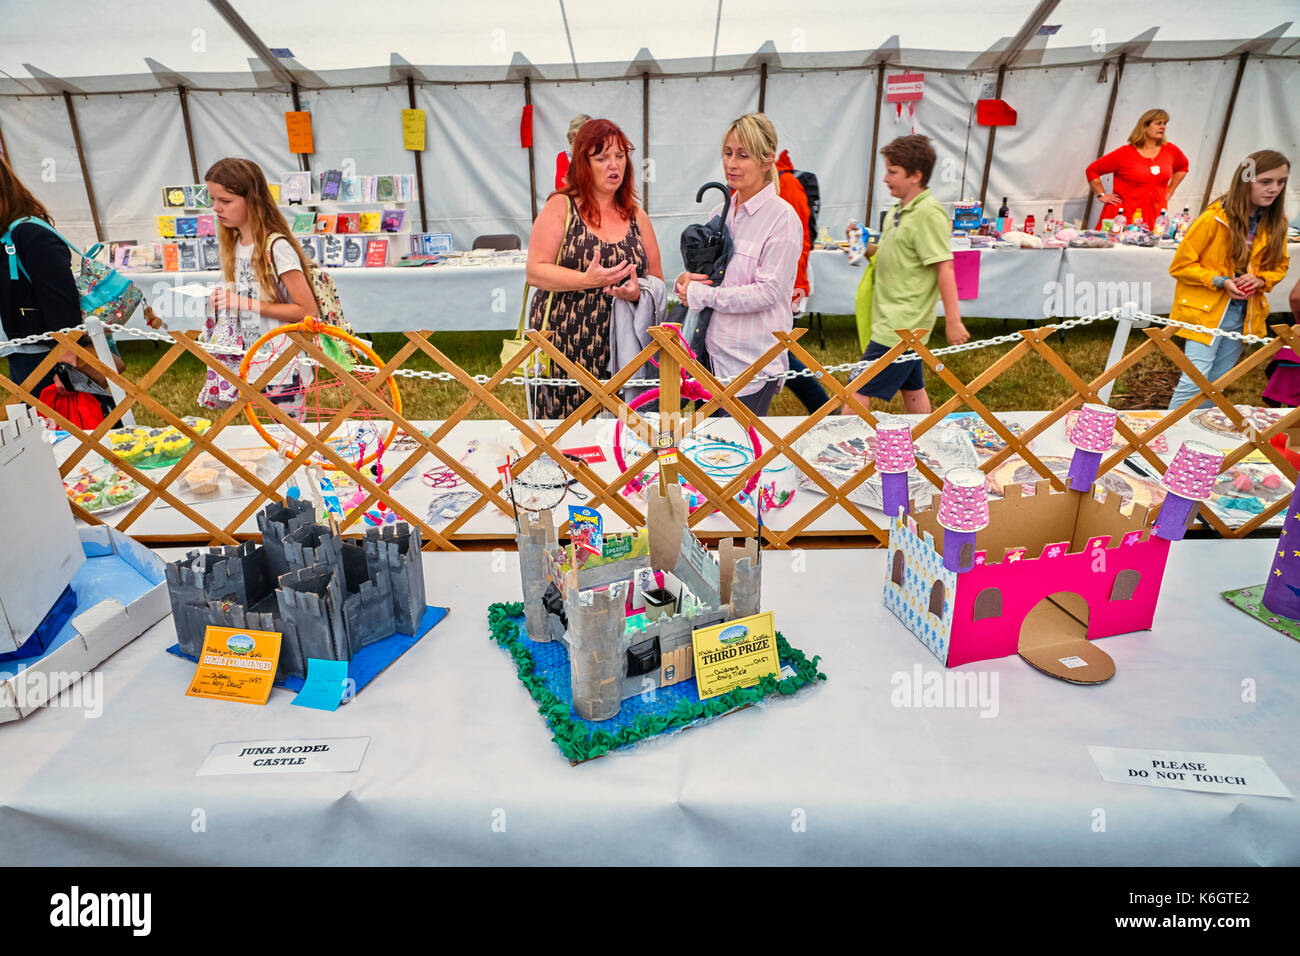 Modelo castillos hechas de basura en Nantwich show agrícola Foto de stock